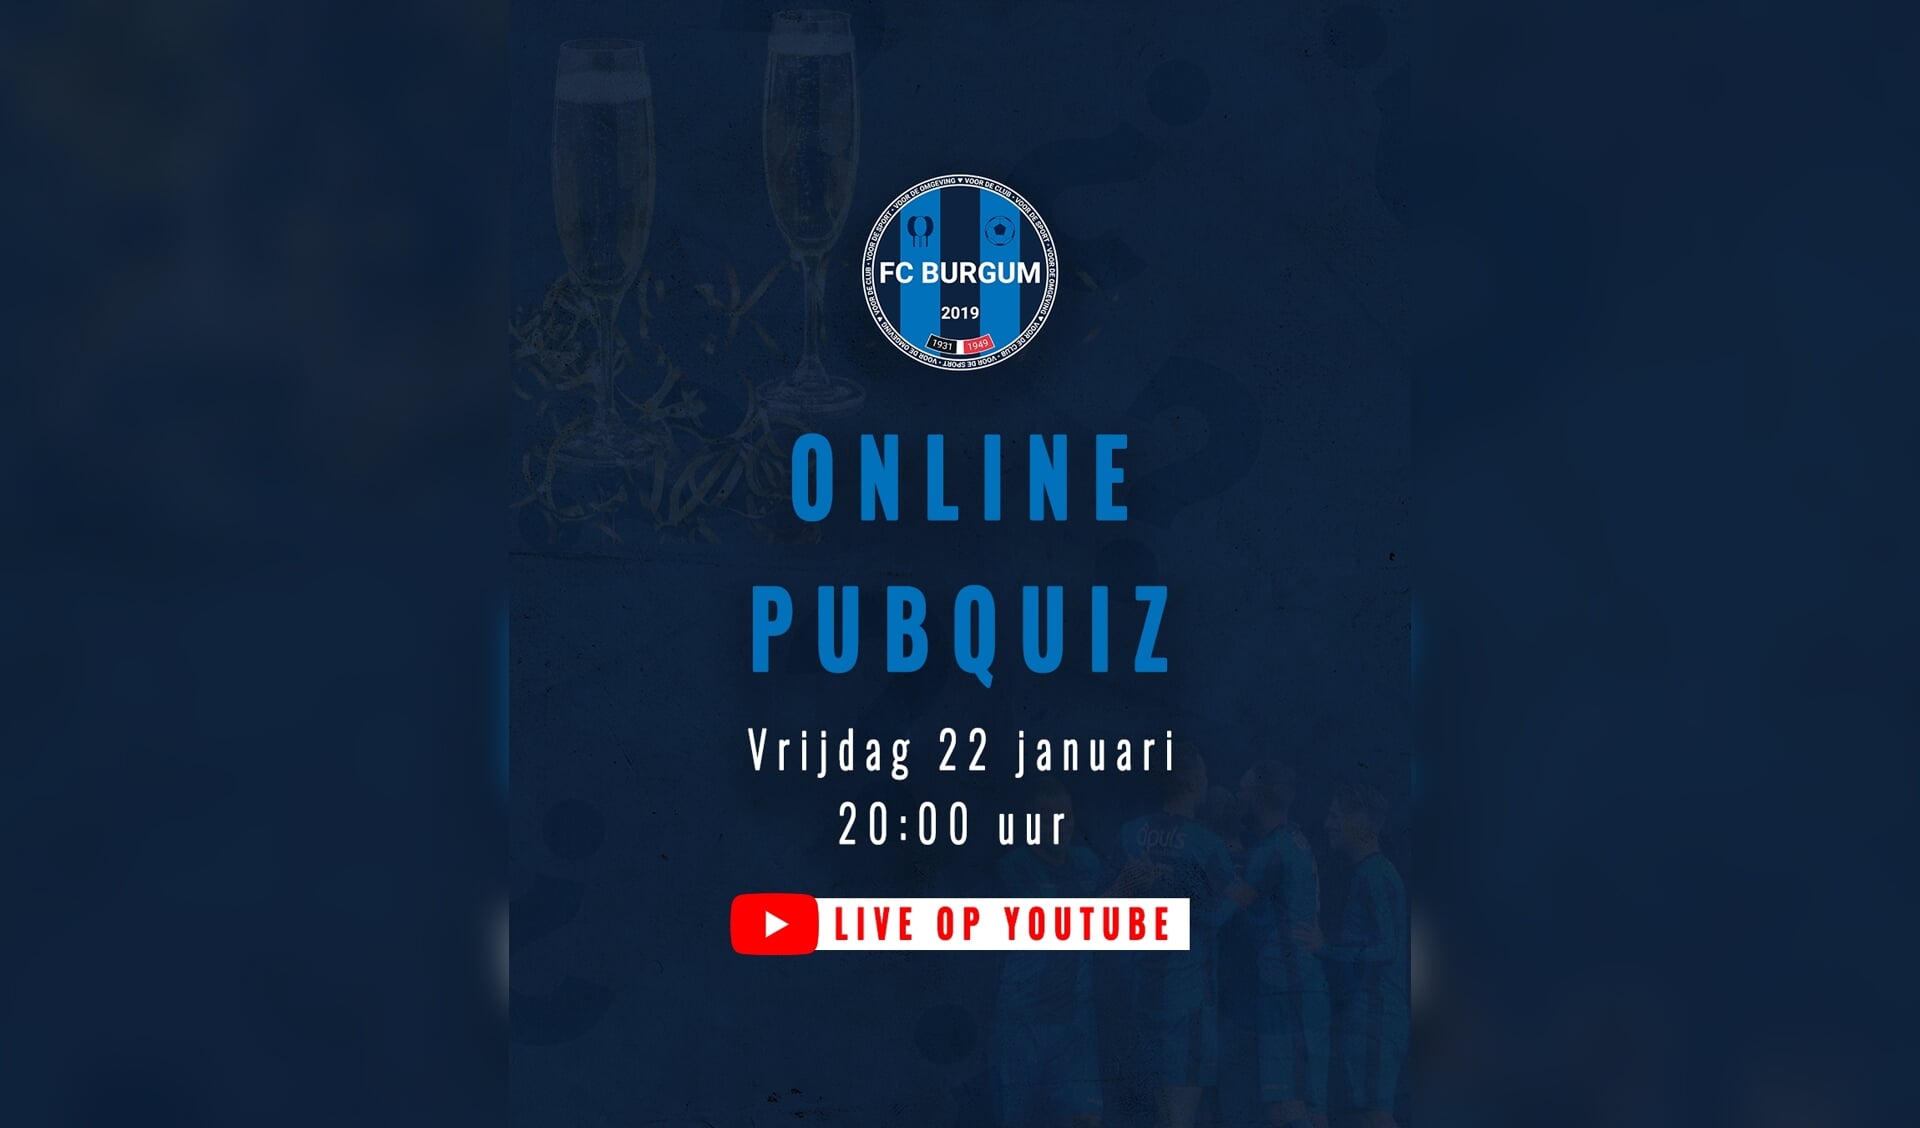 Vrijdagavond 22 januari is de online quiz van FC Burgum